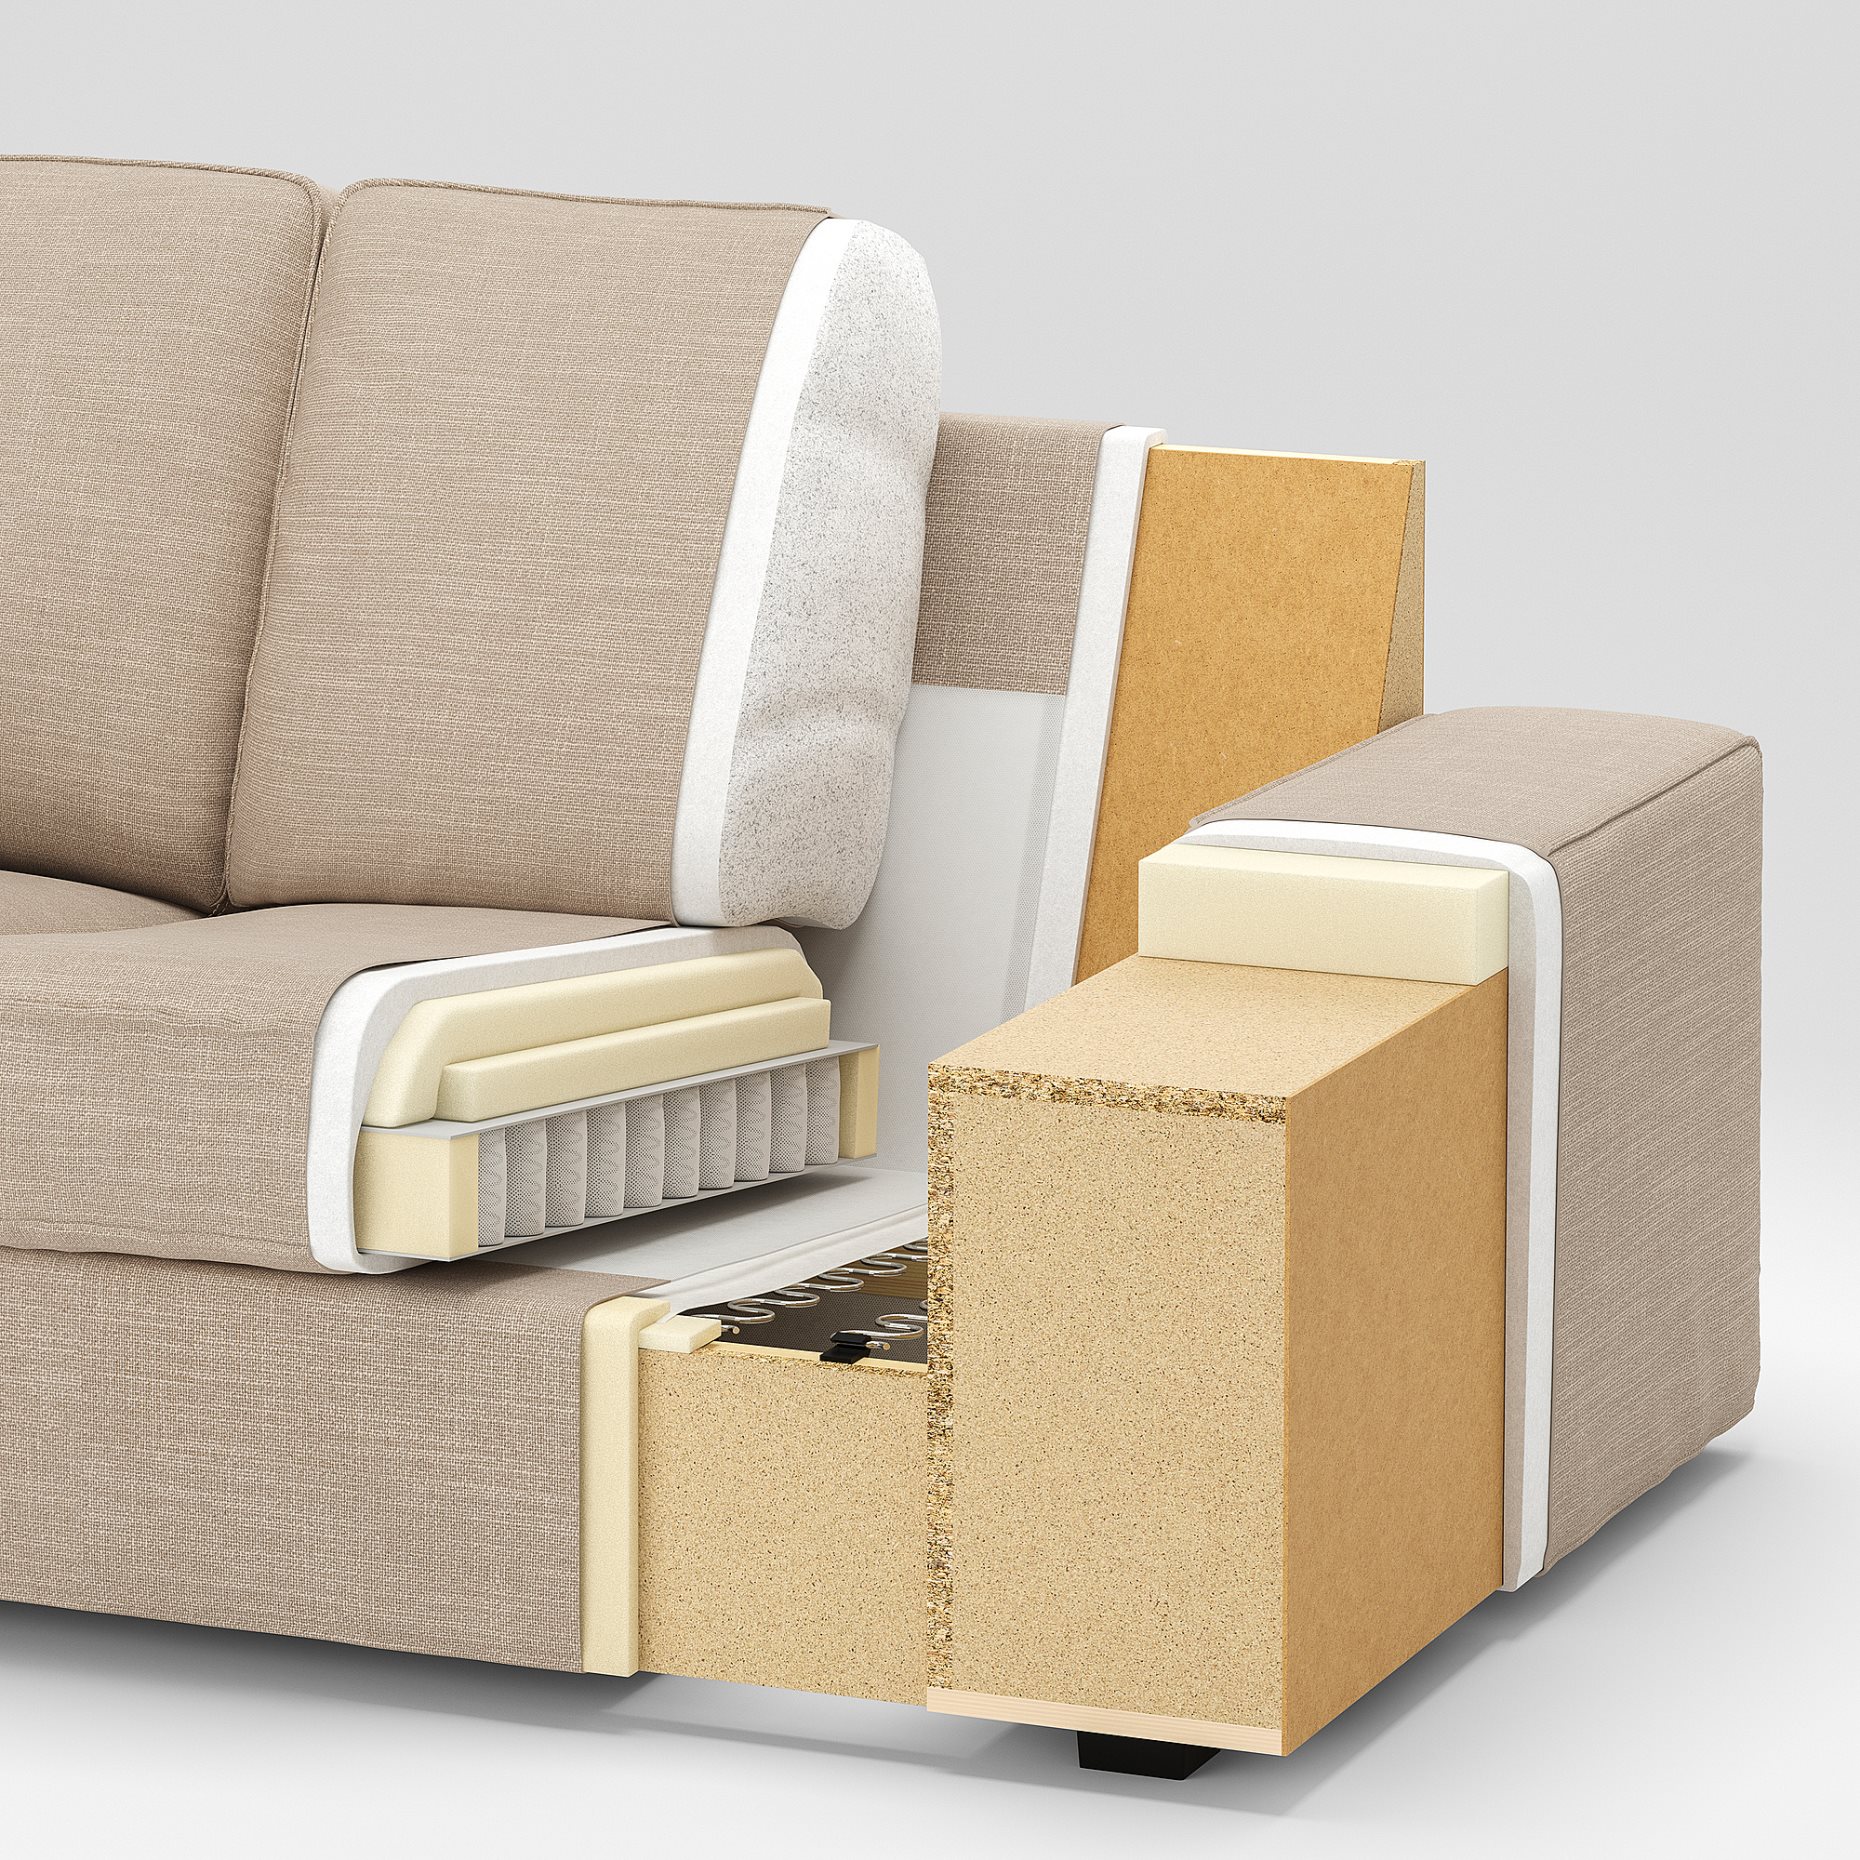 KIVIK, corner sofa, 6-seat w chaise longue, 794.404.83